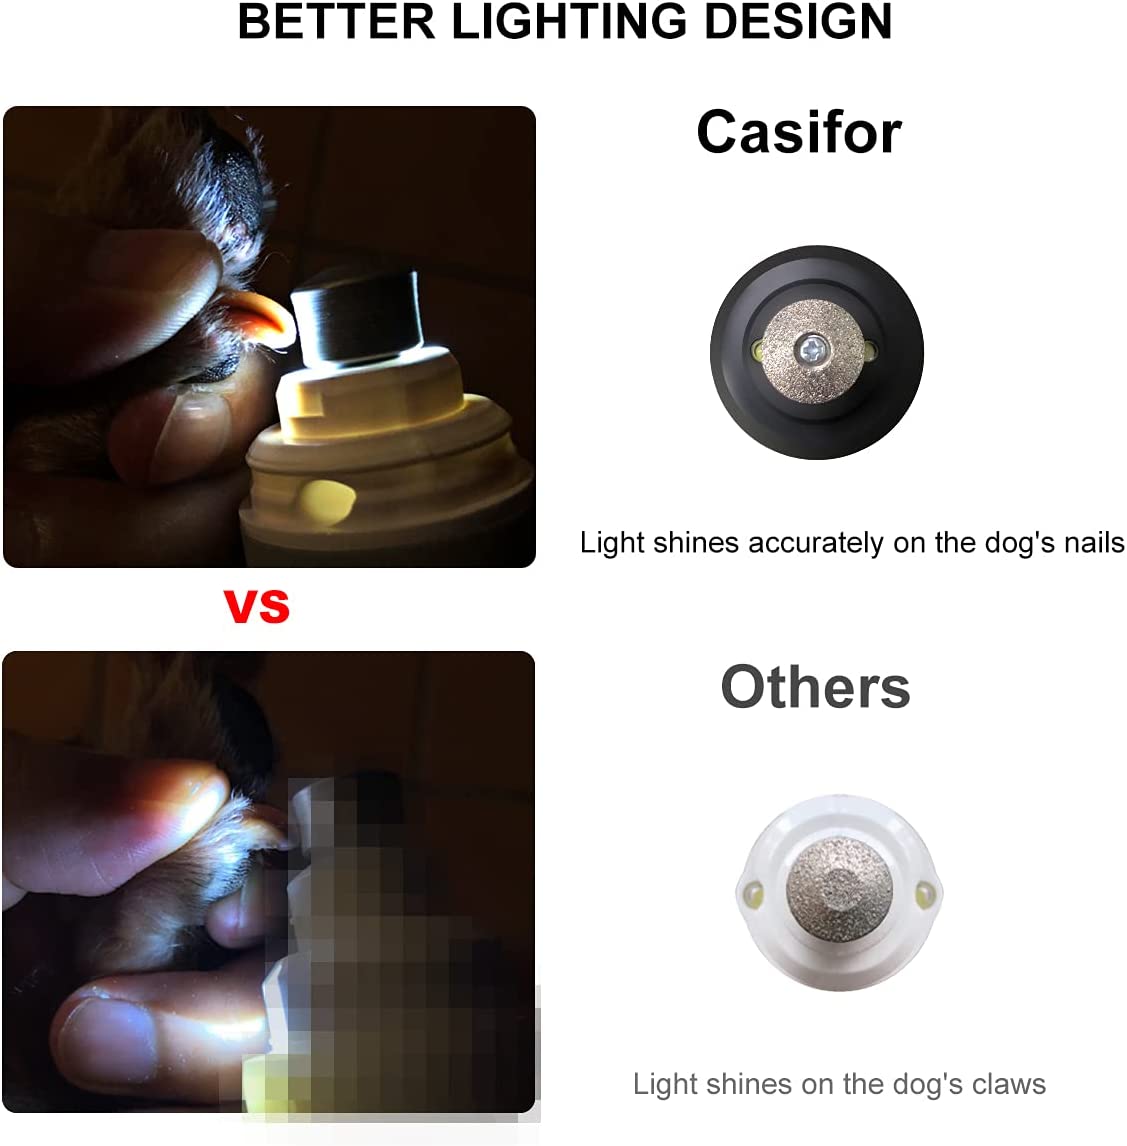 سوهان ناخن حیوان خانگی با چراغ های ال ای دی: آسیاب ناخن سگ Casifor دارای 2 چراغ LED روشن داخلی است که می تواند به شما کمک کند تا مکان سریع را به وضوح ببینید